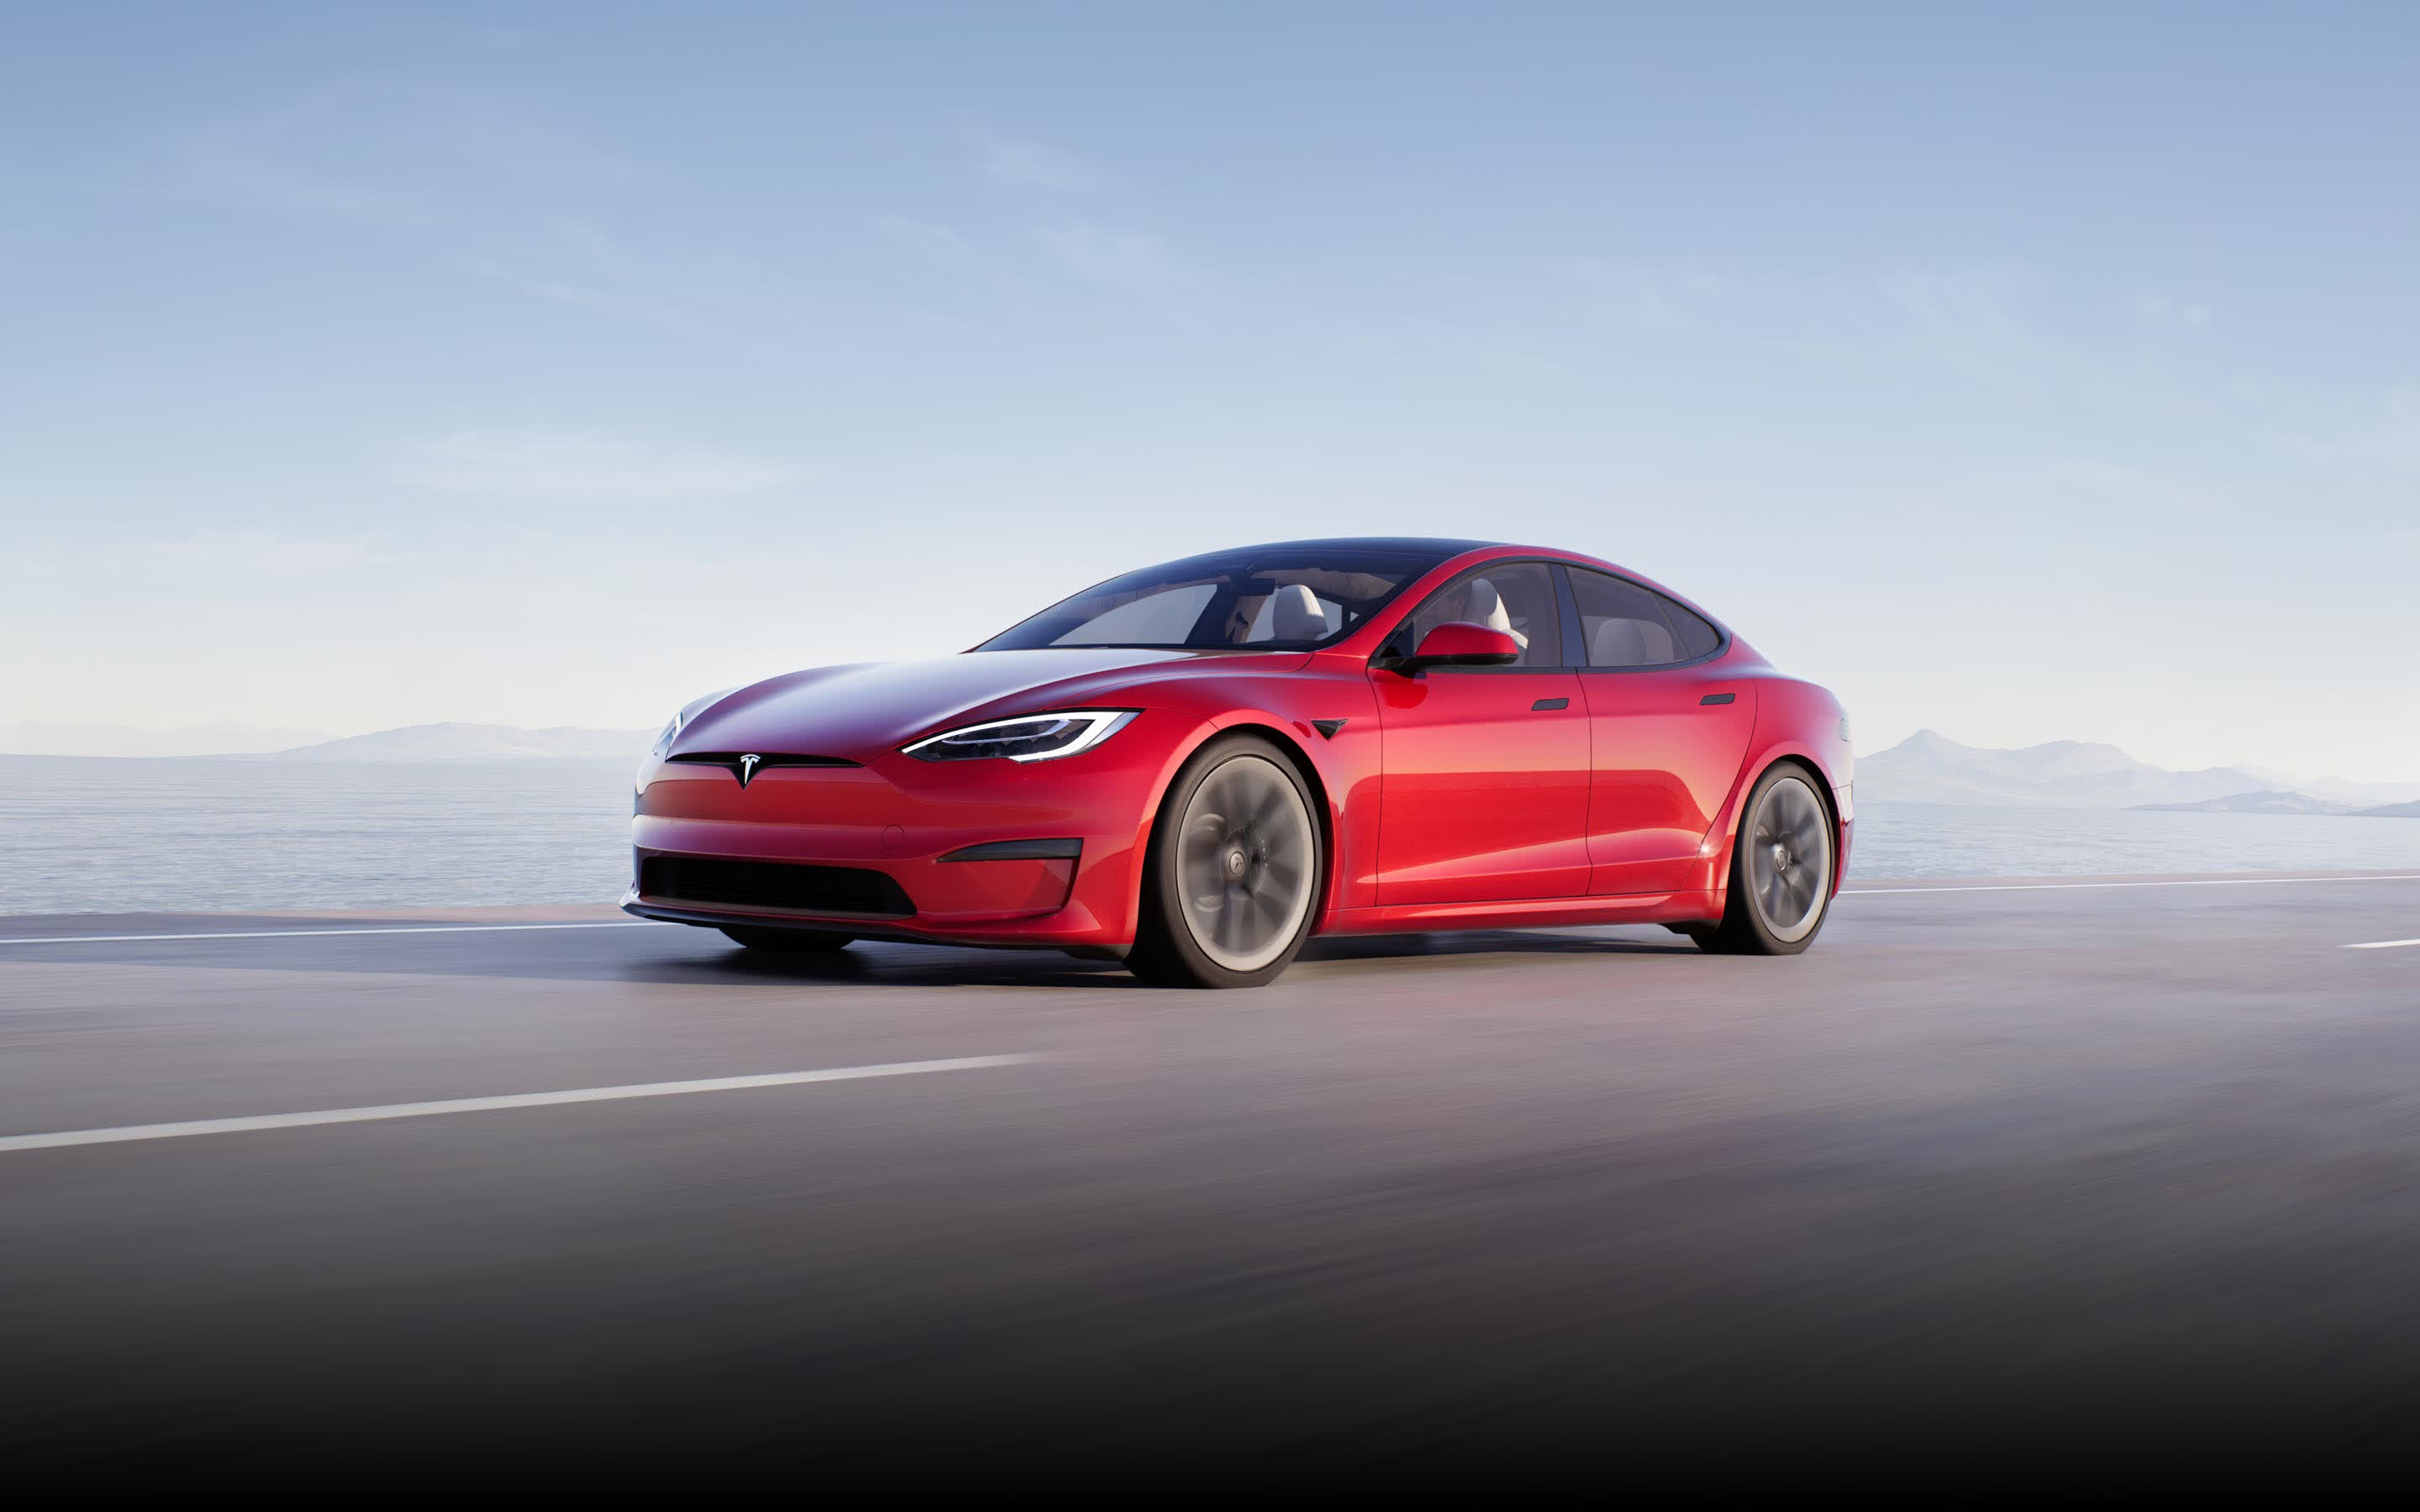 Tesla's Model S Plaid sets production EV record at Germany's famed Nürburgring race track